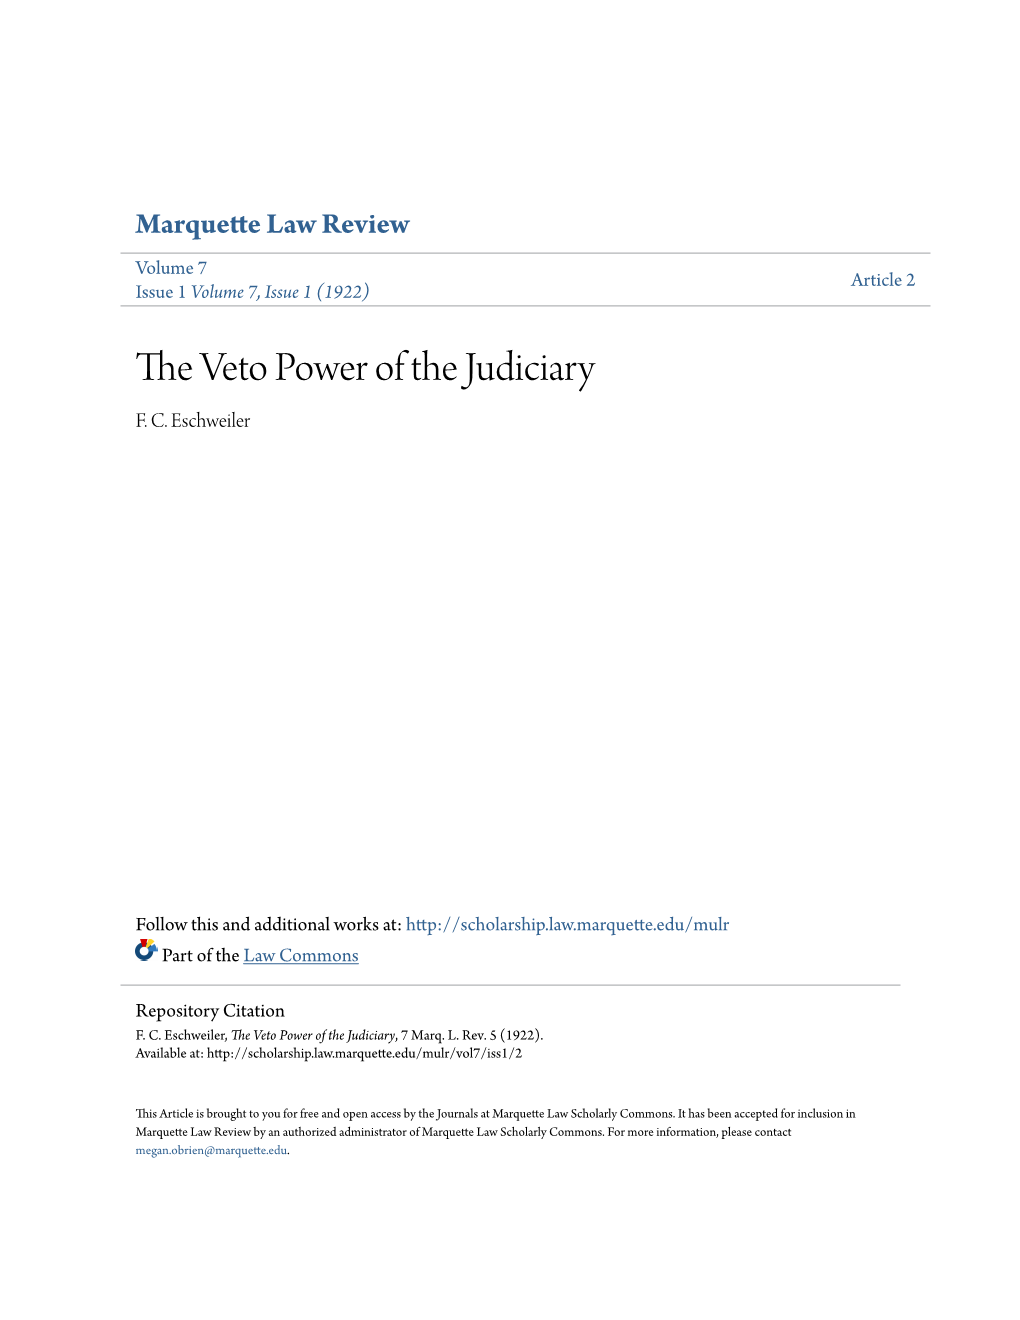 The Veto Power of the Judiciary, 7 Marq